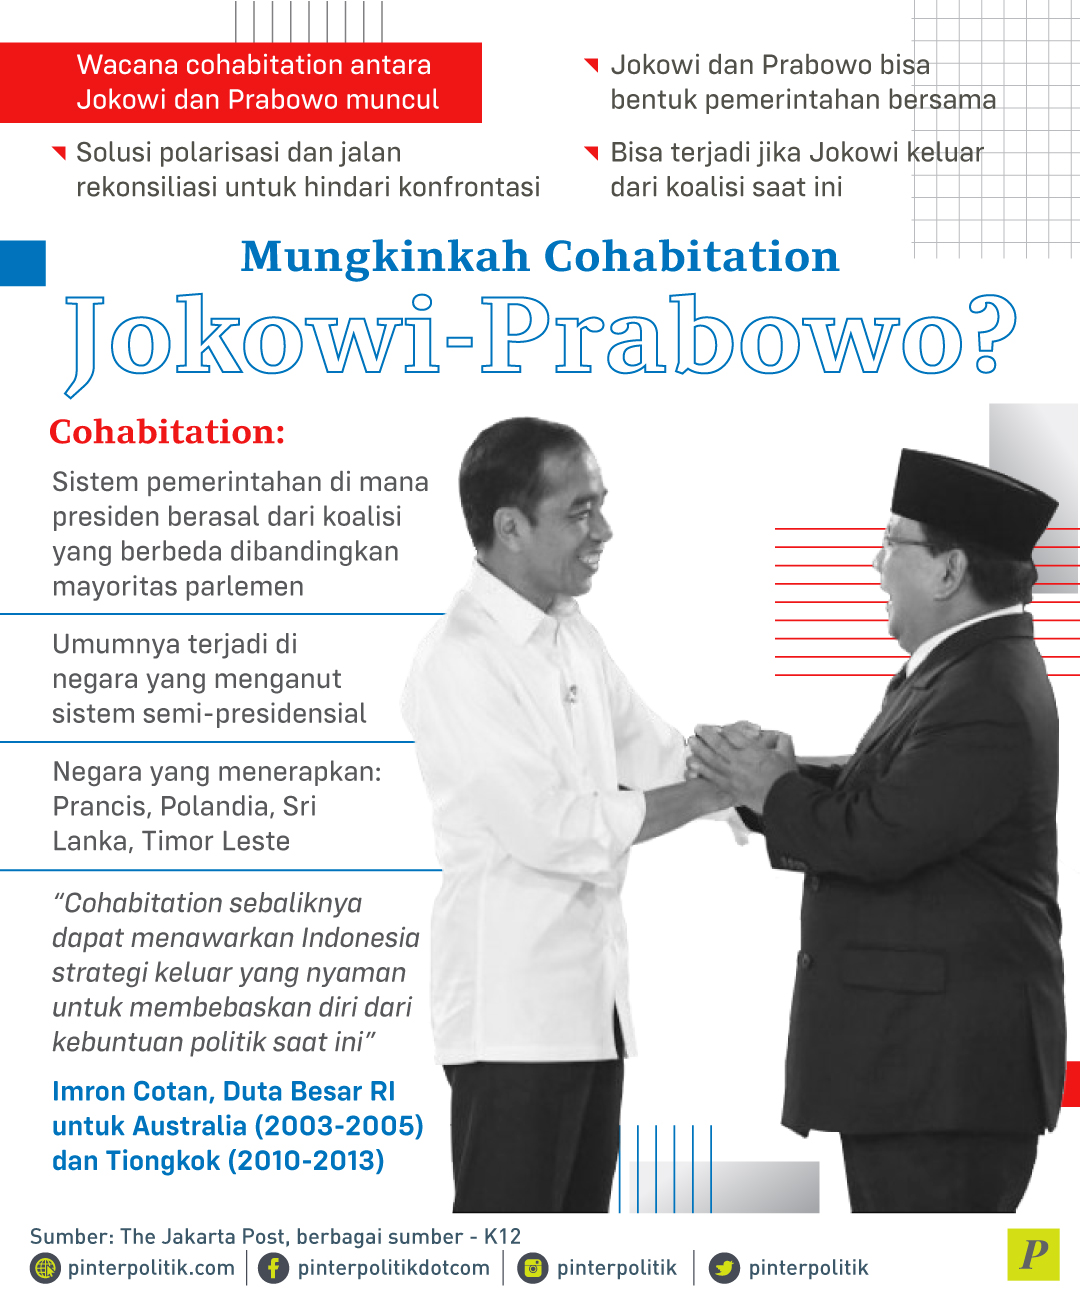 Wacana Cohabitation antara Jokowi dan Prabowo